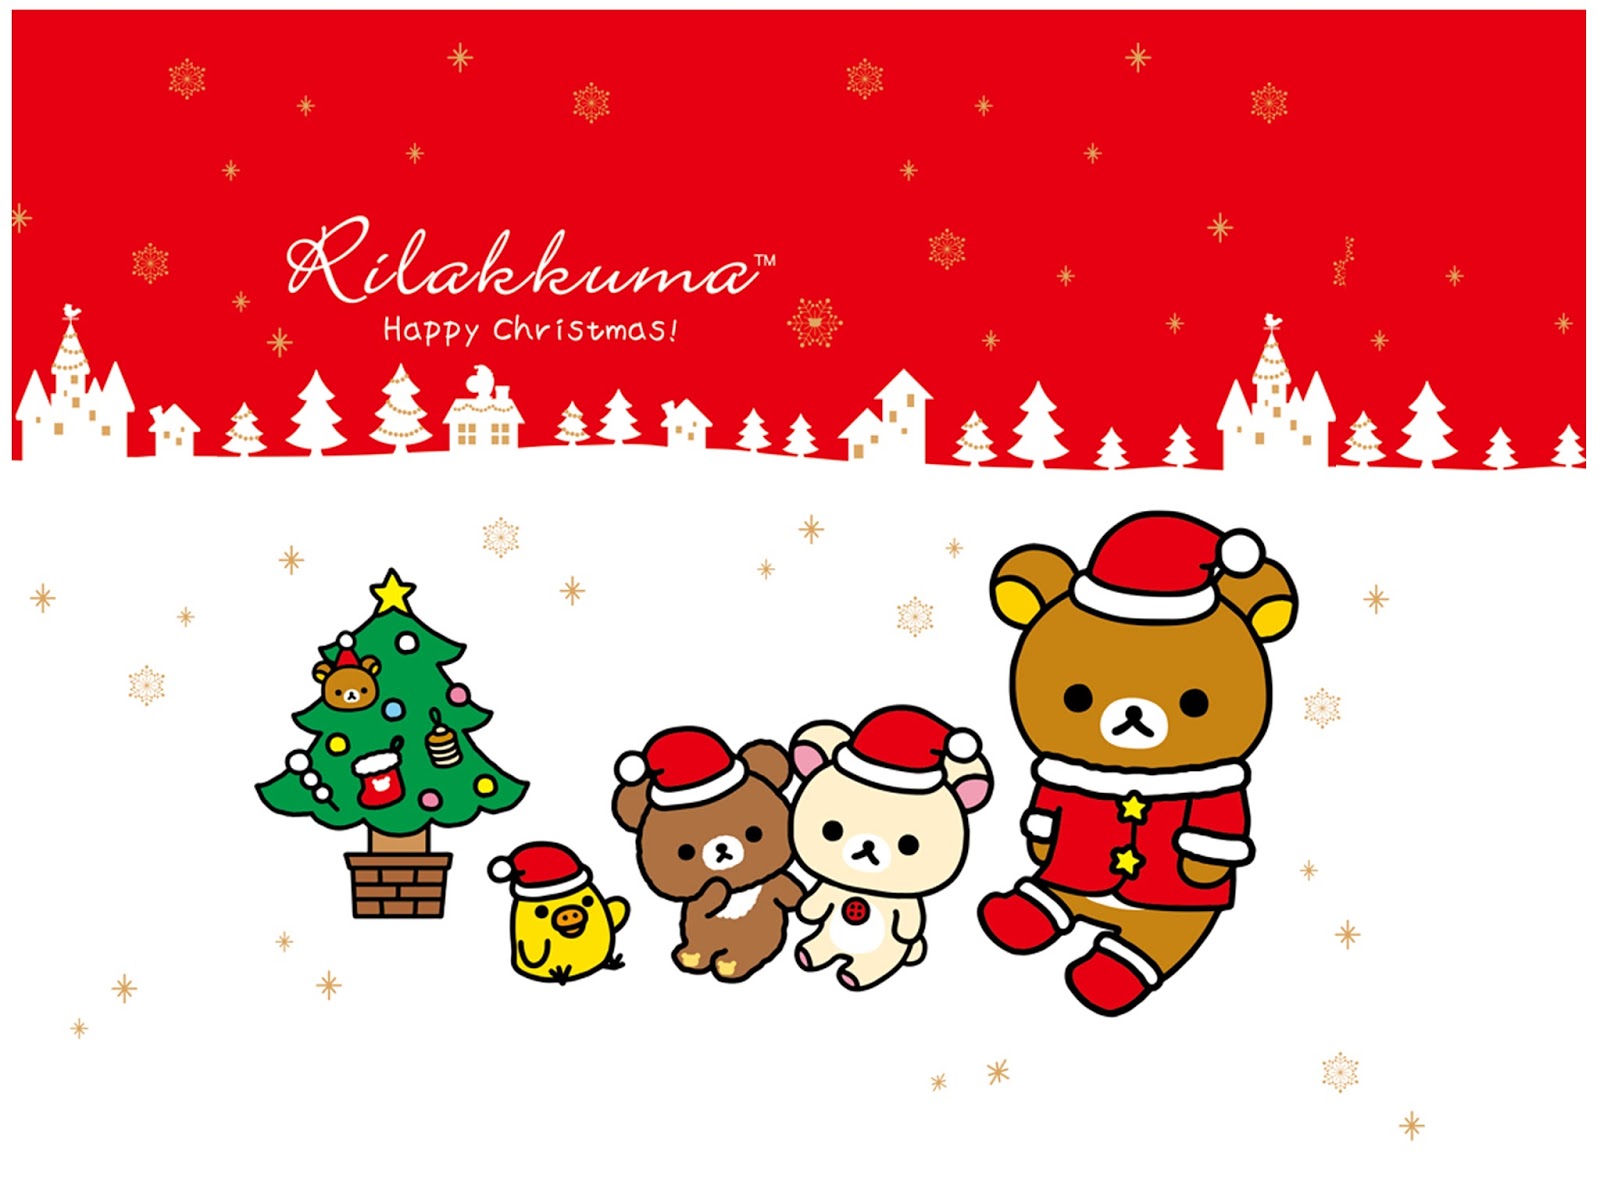 Kawaii Christmas Wallpaper - Christmas Rilakkuma - HD Wallpaper 